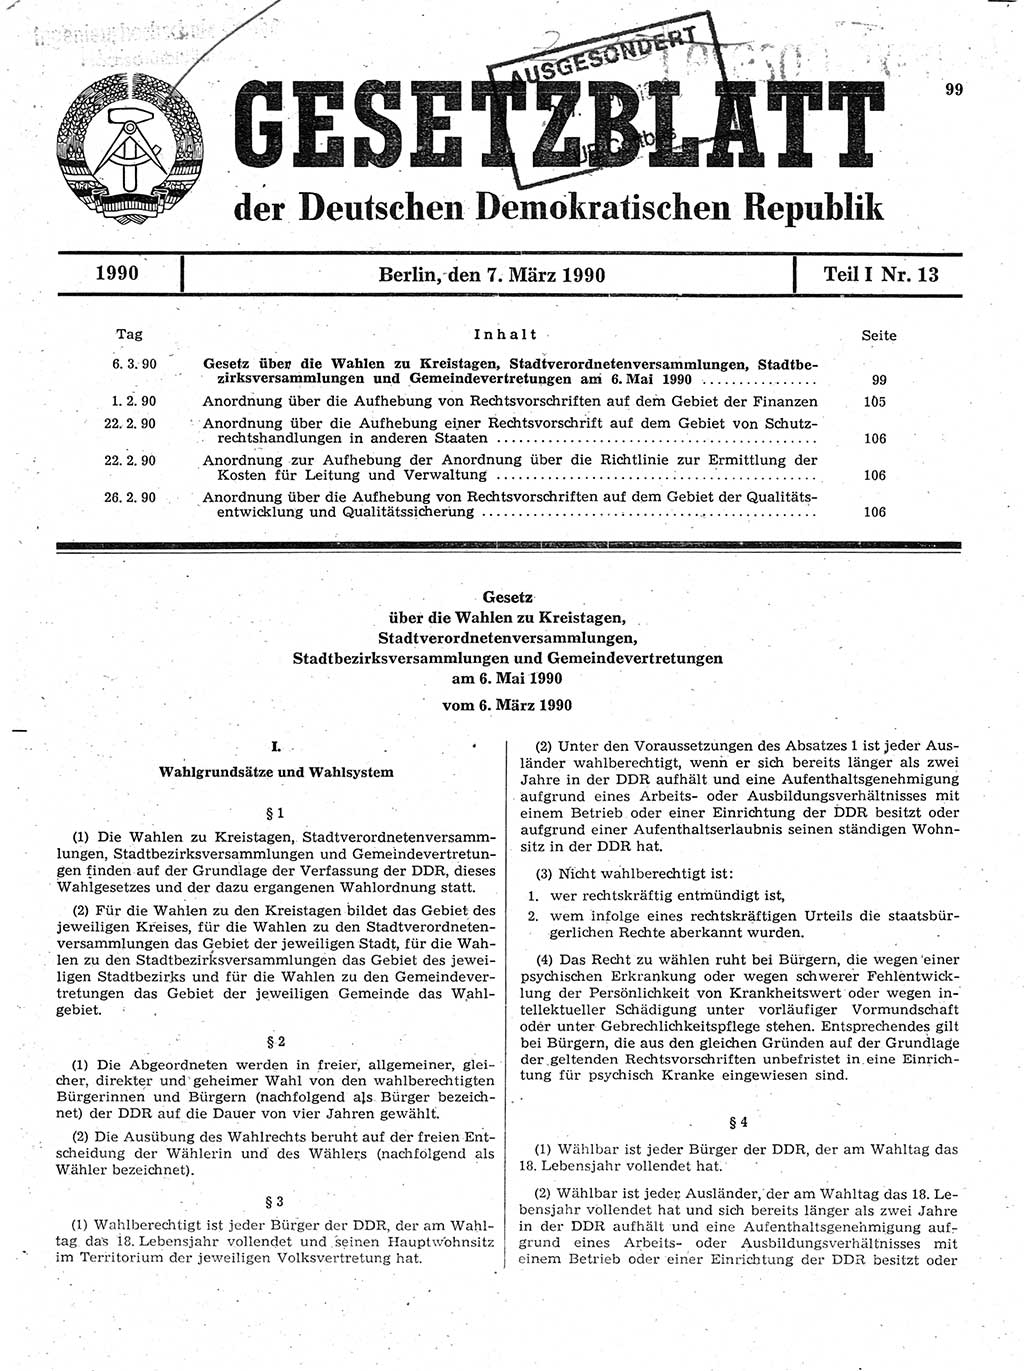 Gesetzblatt (GBl.) der Deutschen Demokratischen Republik (DDR) Teil Ⅰ 1990, Seite 99 (GBl. DDR Ⅰ 1990, S. 99)